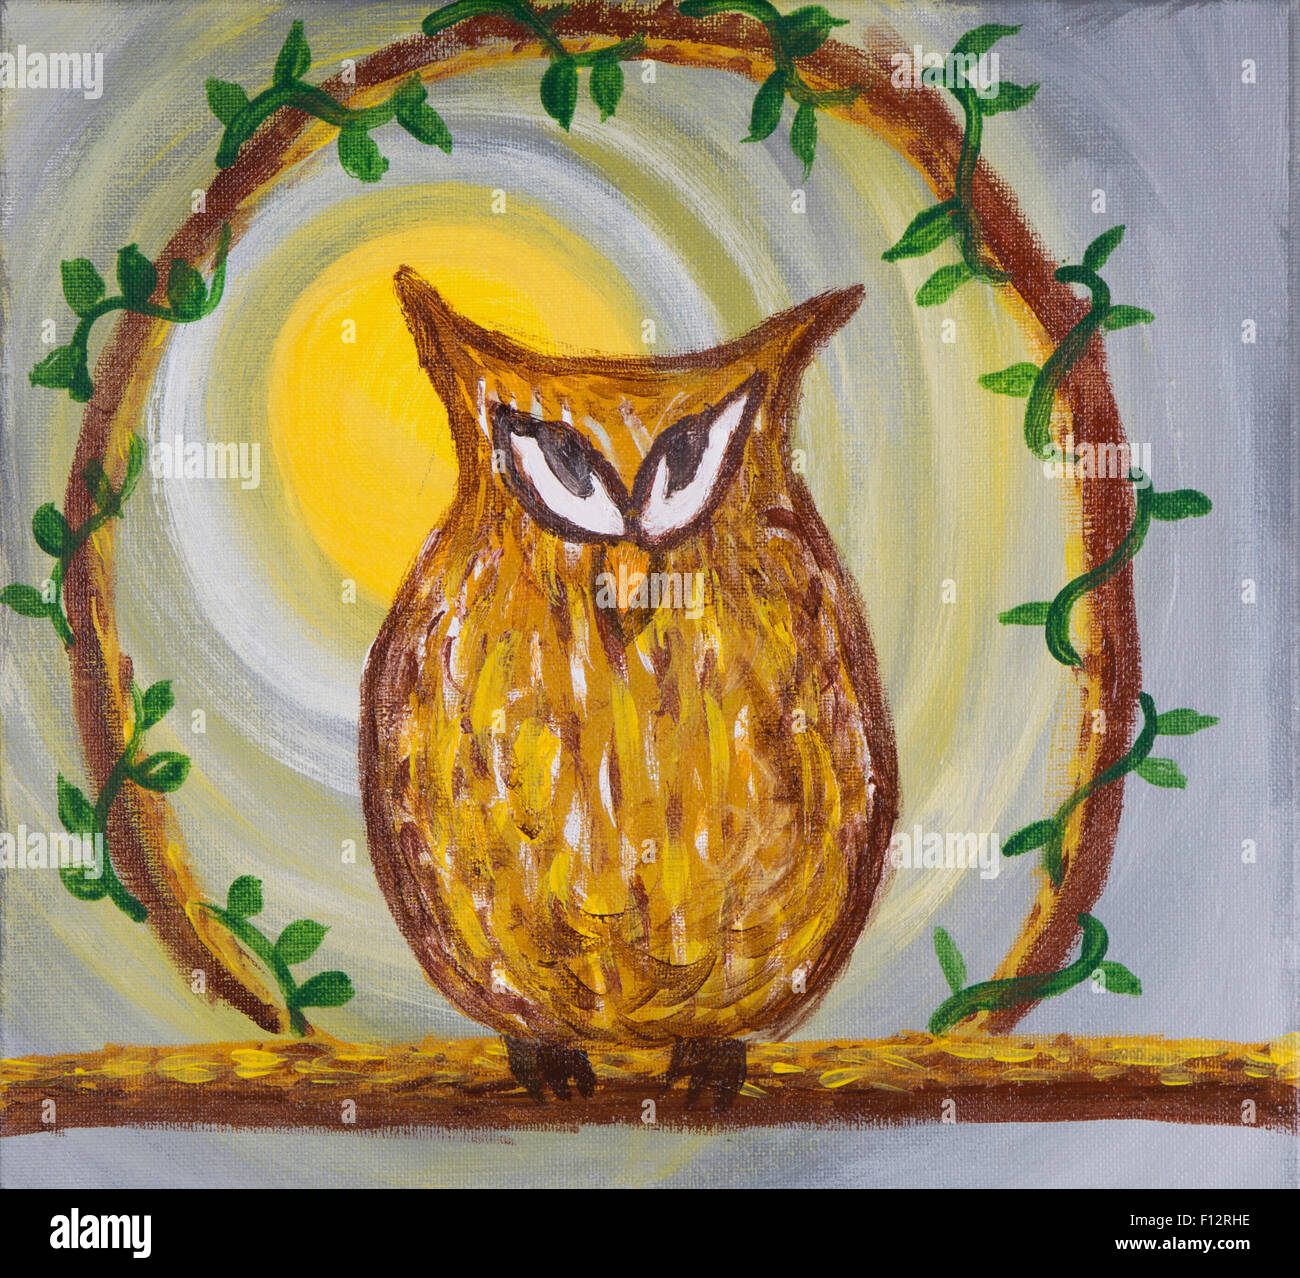 Peinture acrylique d'une ruse sournoise à la couleur marron en owl avec un bec orange situé sur un tronc d'arbre Banque D'Images